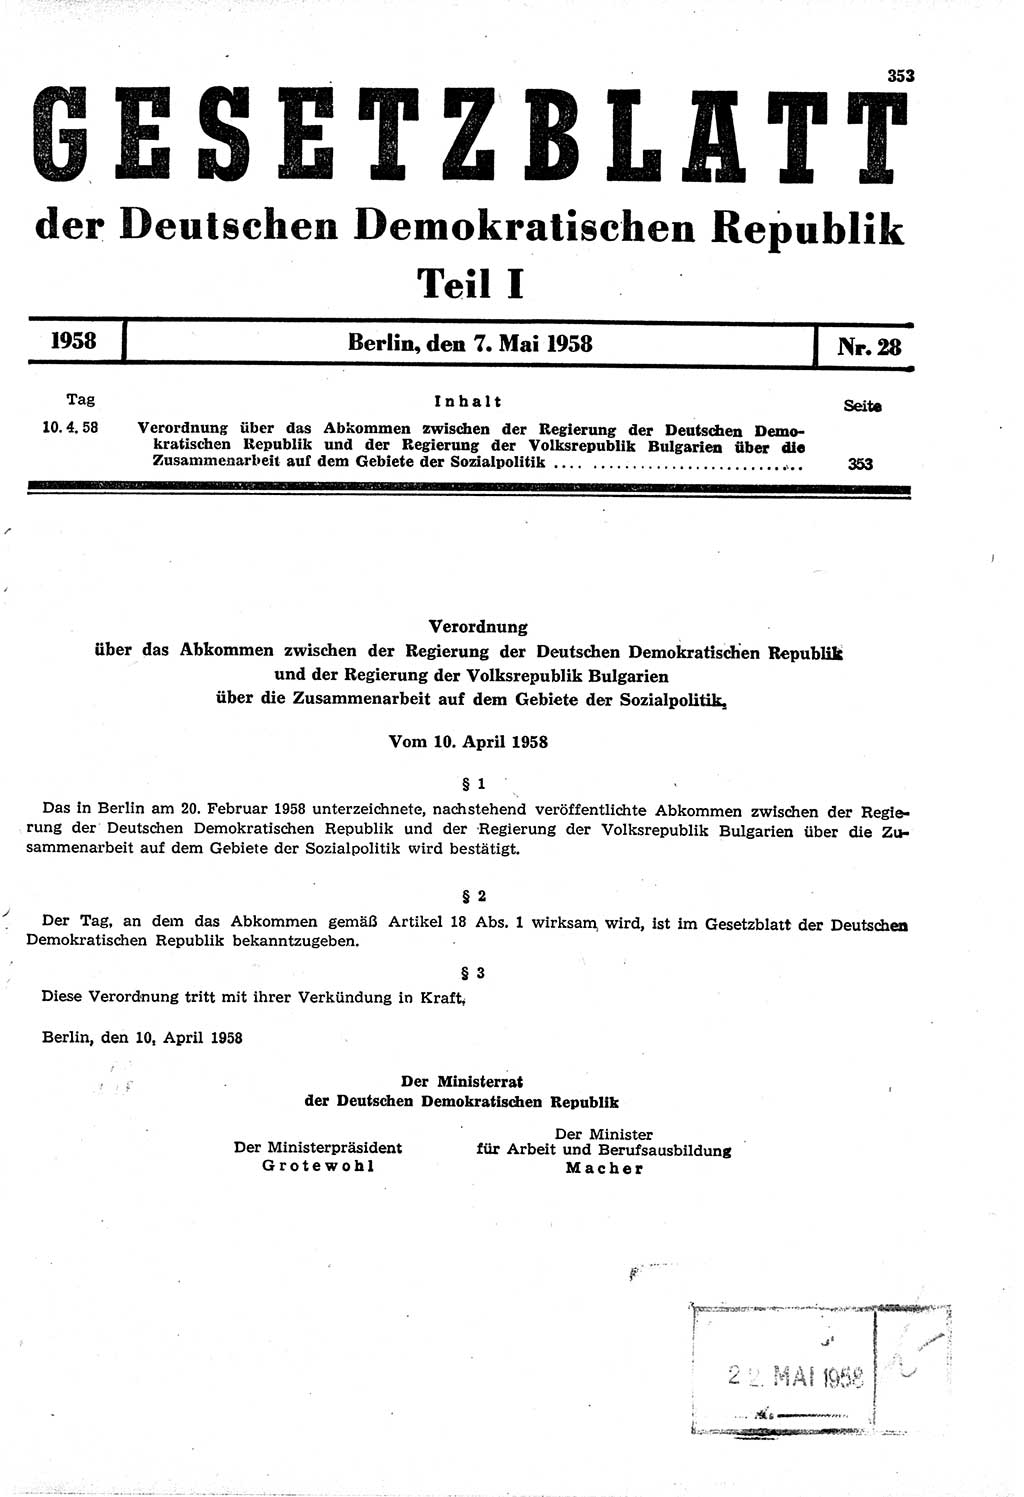 Gesetzblatt (GBl.) der Deutschen Demokratischen Republik (DDR) Teil Ⅰ 1958, Seite 353 (GBl. DDR Ⅰ 1958, S. 353)